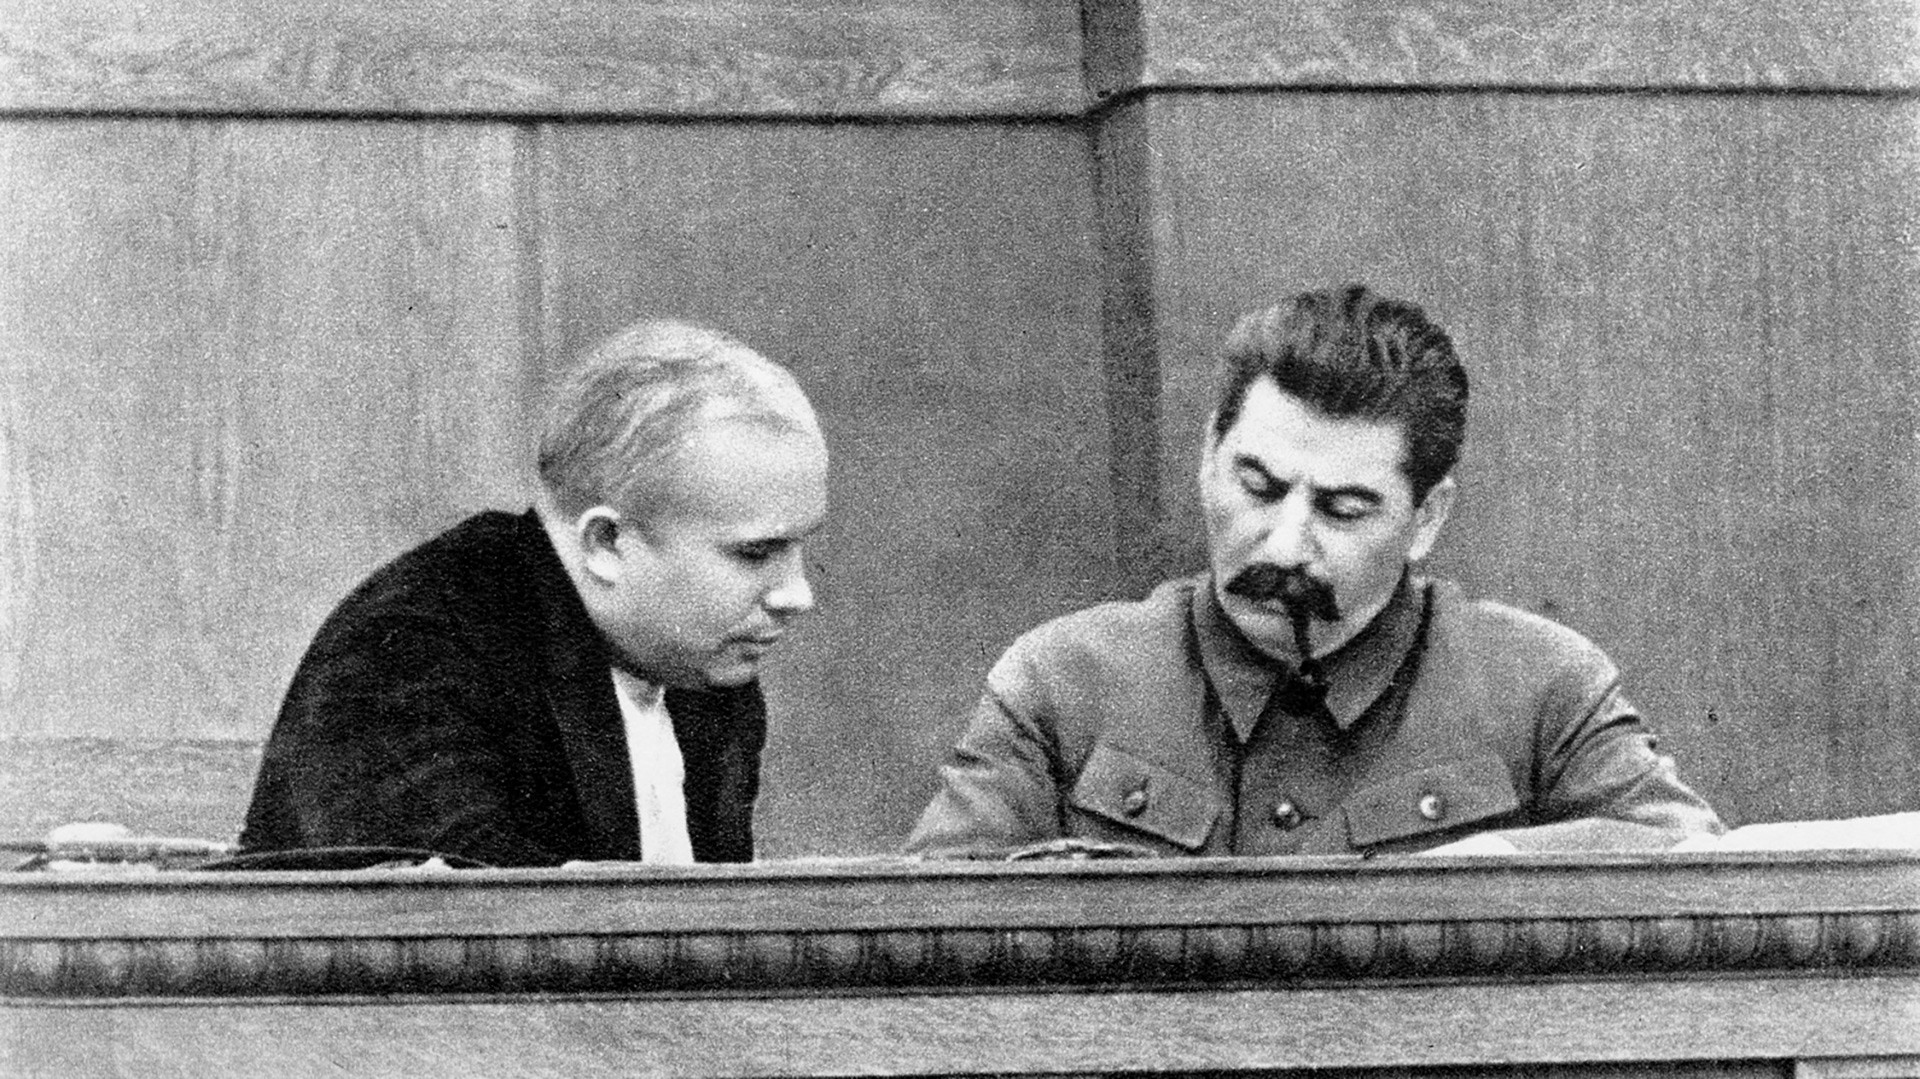 Јосиф Стаљин и Никита Хрушчов, јаунар 1936.